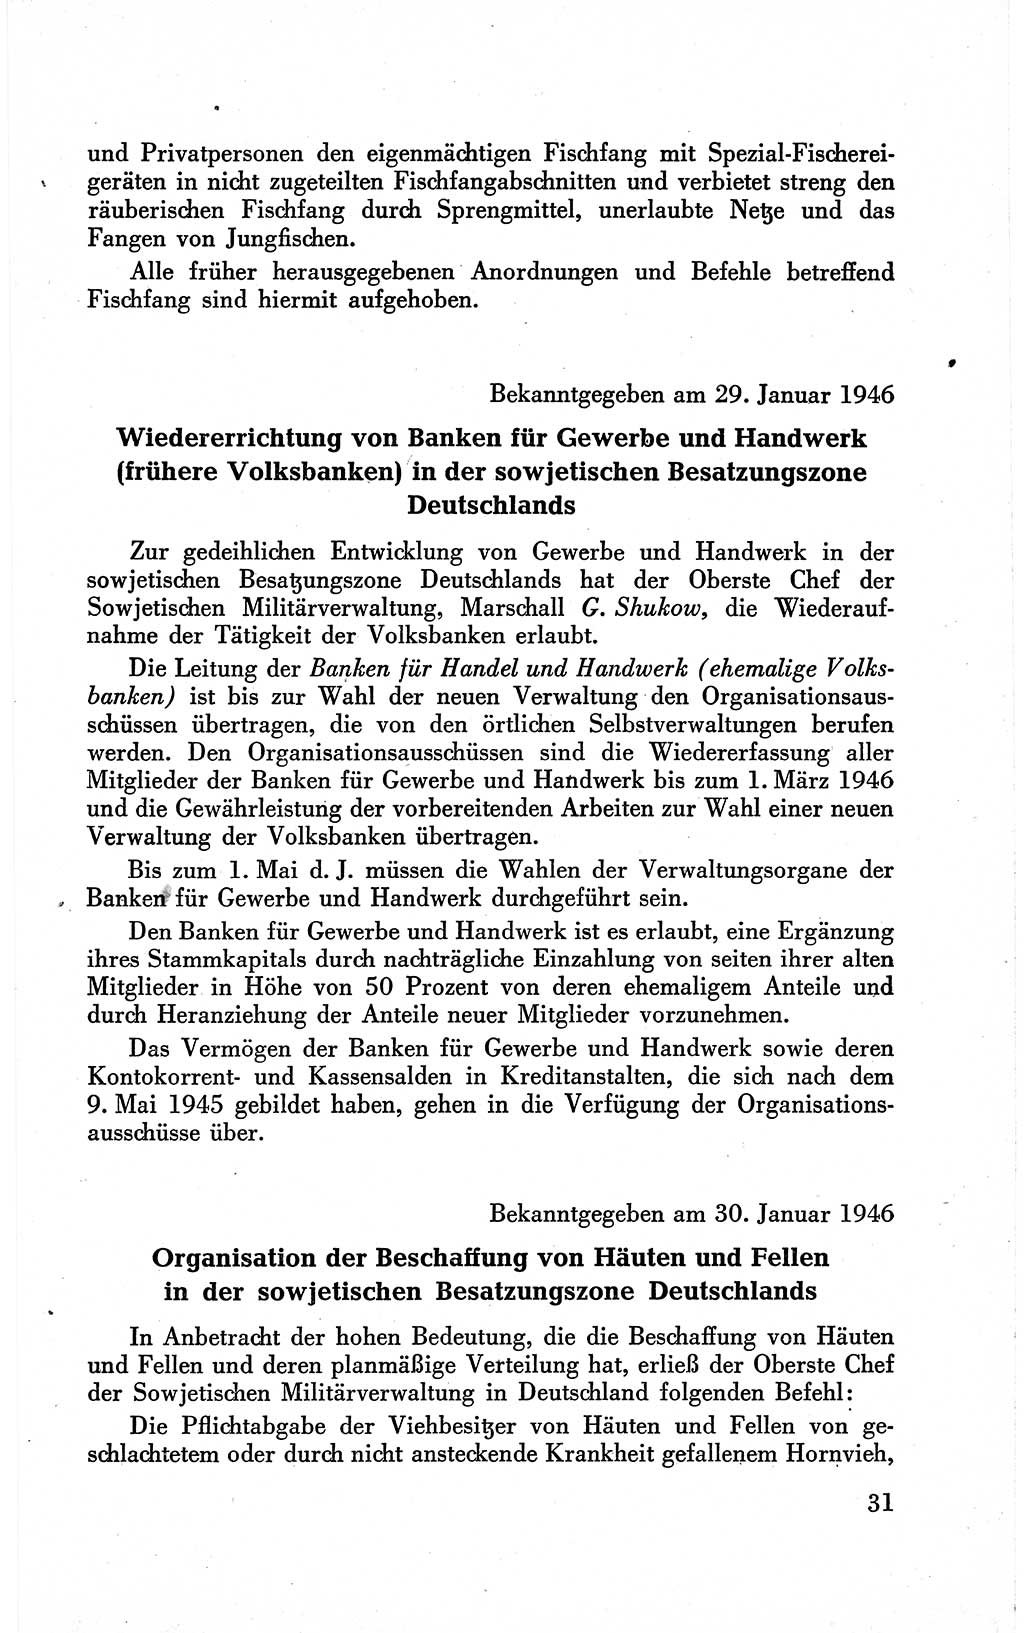 Befehle des Obersten Chefs der Sowjetischen Miltärverwaltung (SMV) in Deutschland - Aus dem Stab der Sowjetischen Militärverwaltung in Deutschland 1946 (Bef. SMV Dtl. 1946, S. 31)